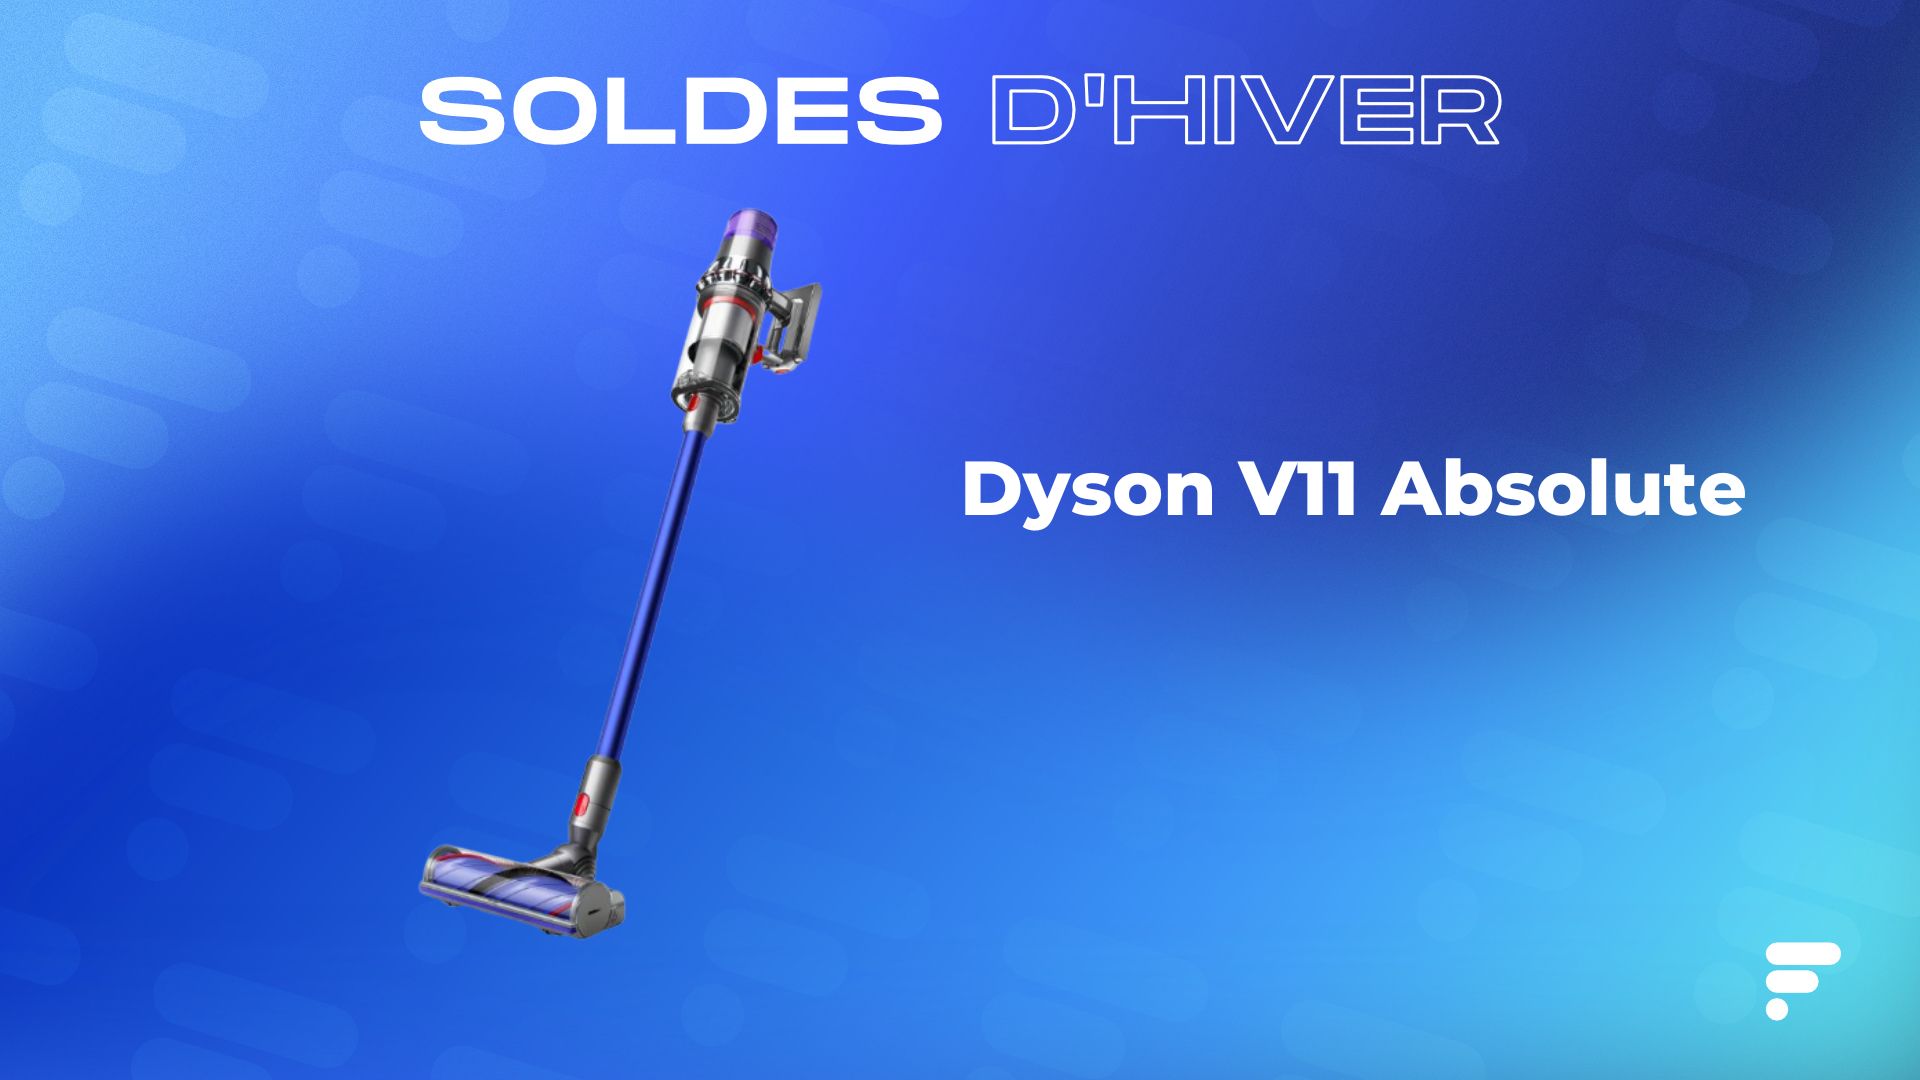 Le Dyson V8 en promotion : profitez de ce bon plan !